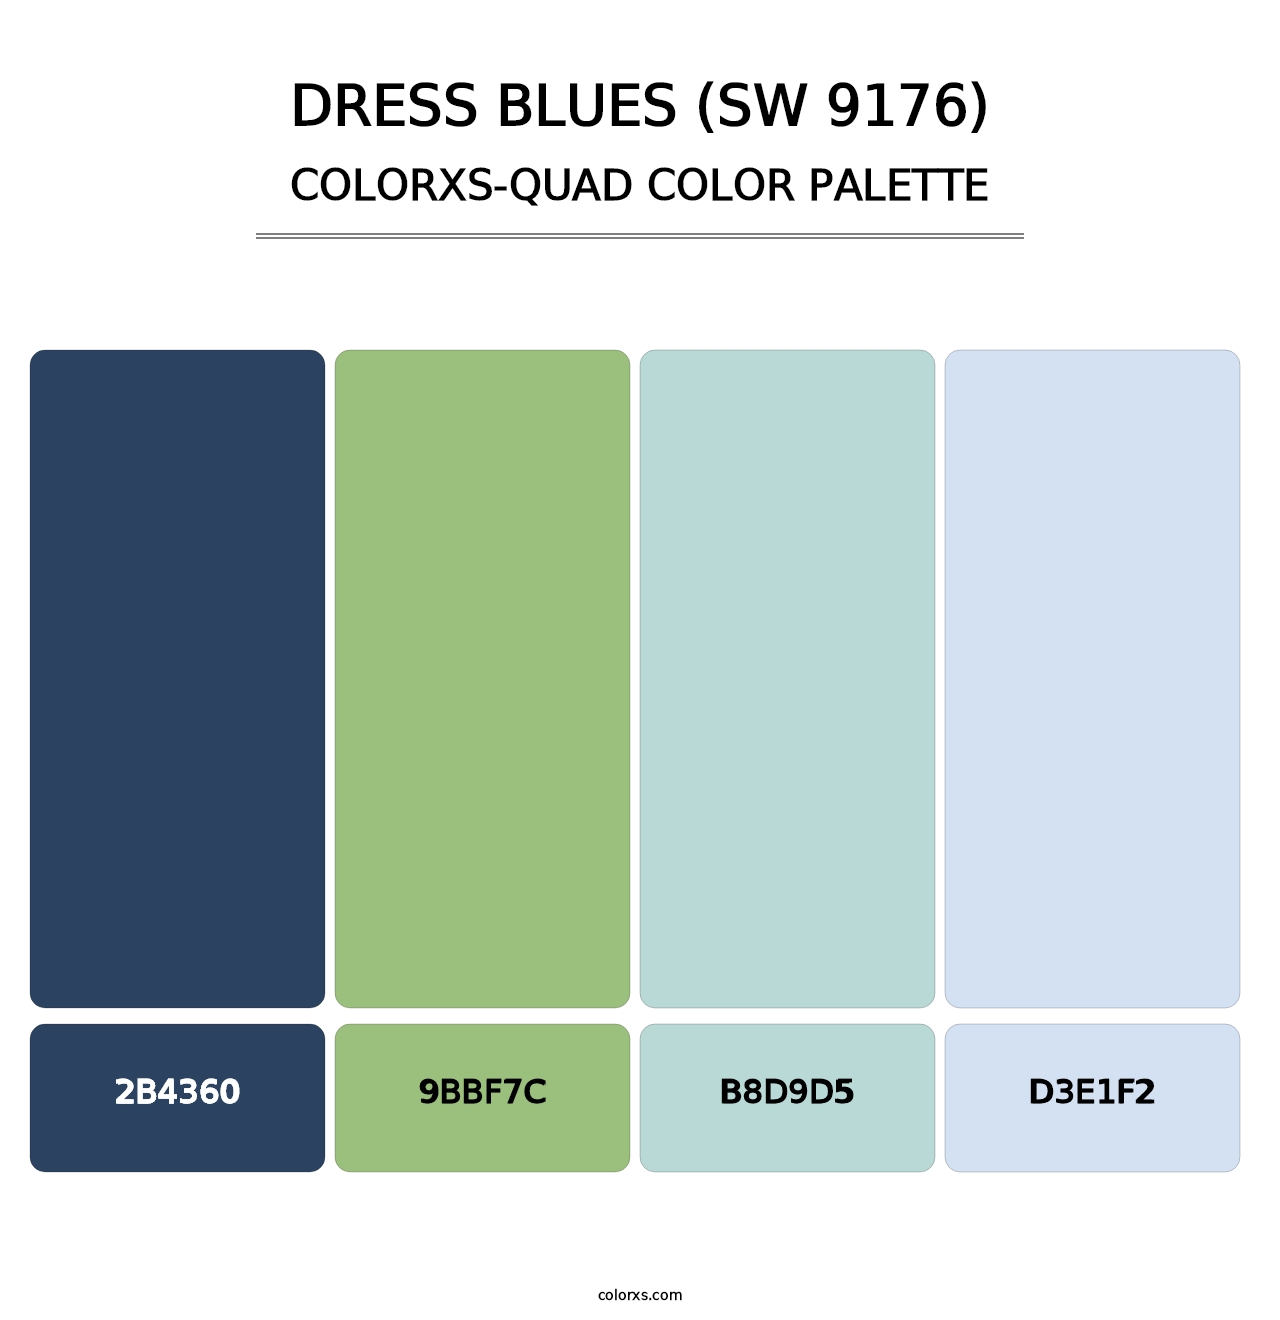 Dress Blues (SW 9176) - Colorxs Quad Palette